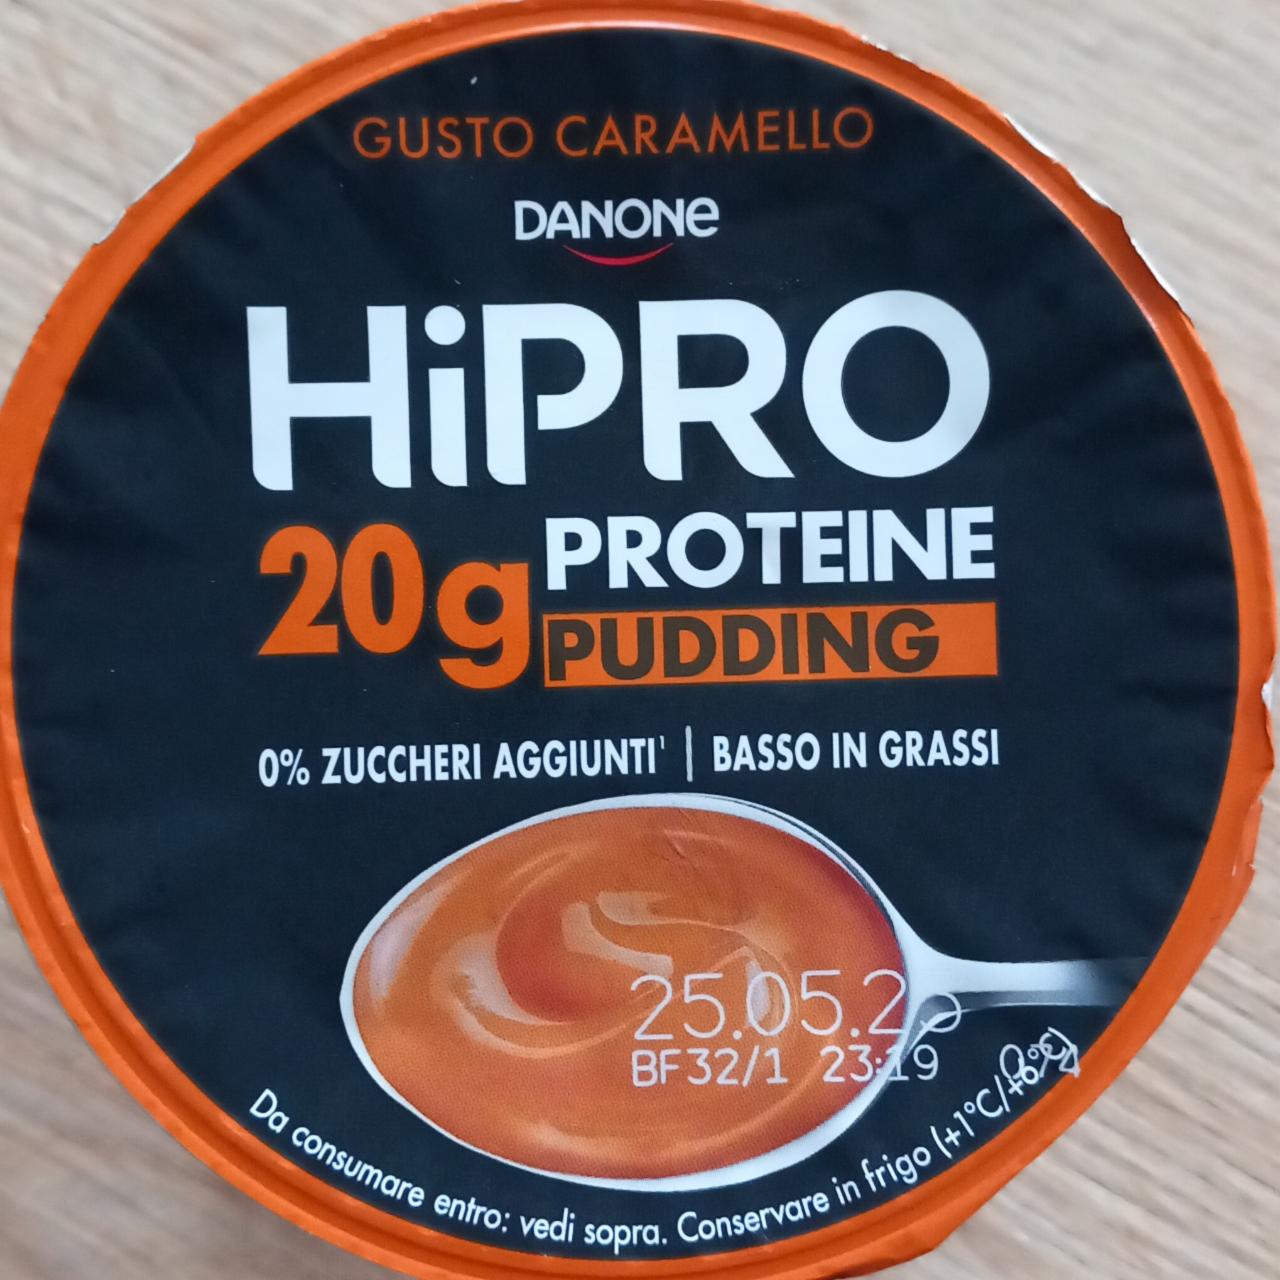 Fotografie - HiPro Proteine Pudding Caramello Danone